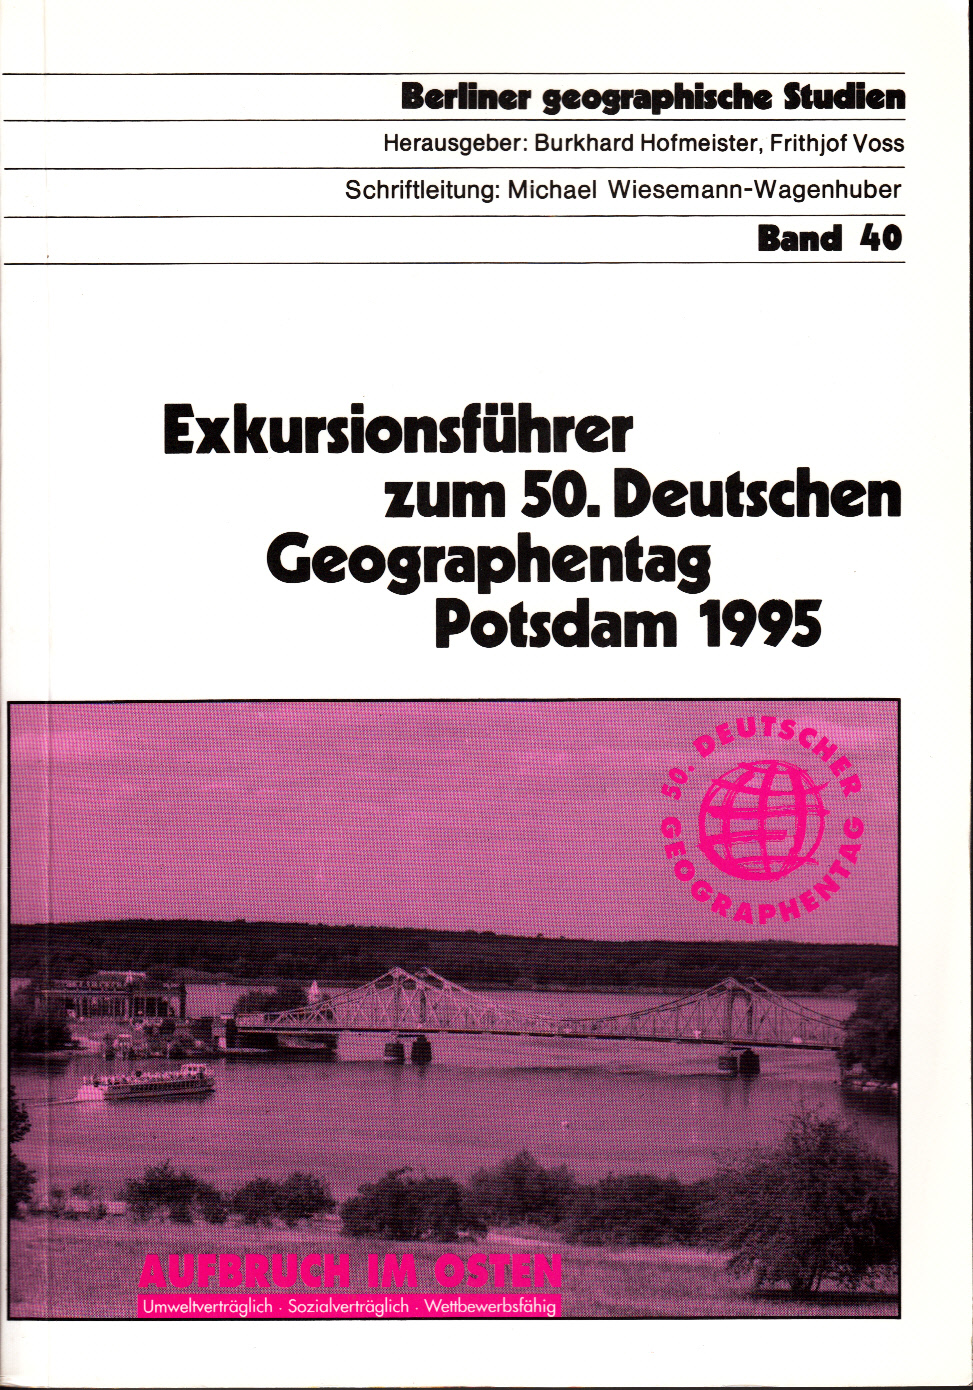 Exkursionsführer zum 50. Deutschen Geographentag Potsdam 1995